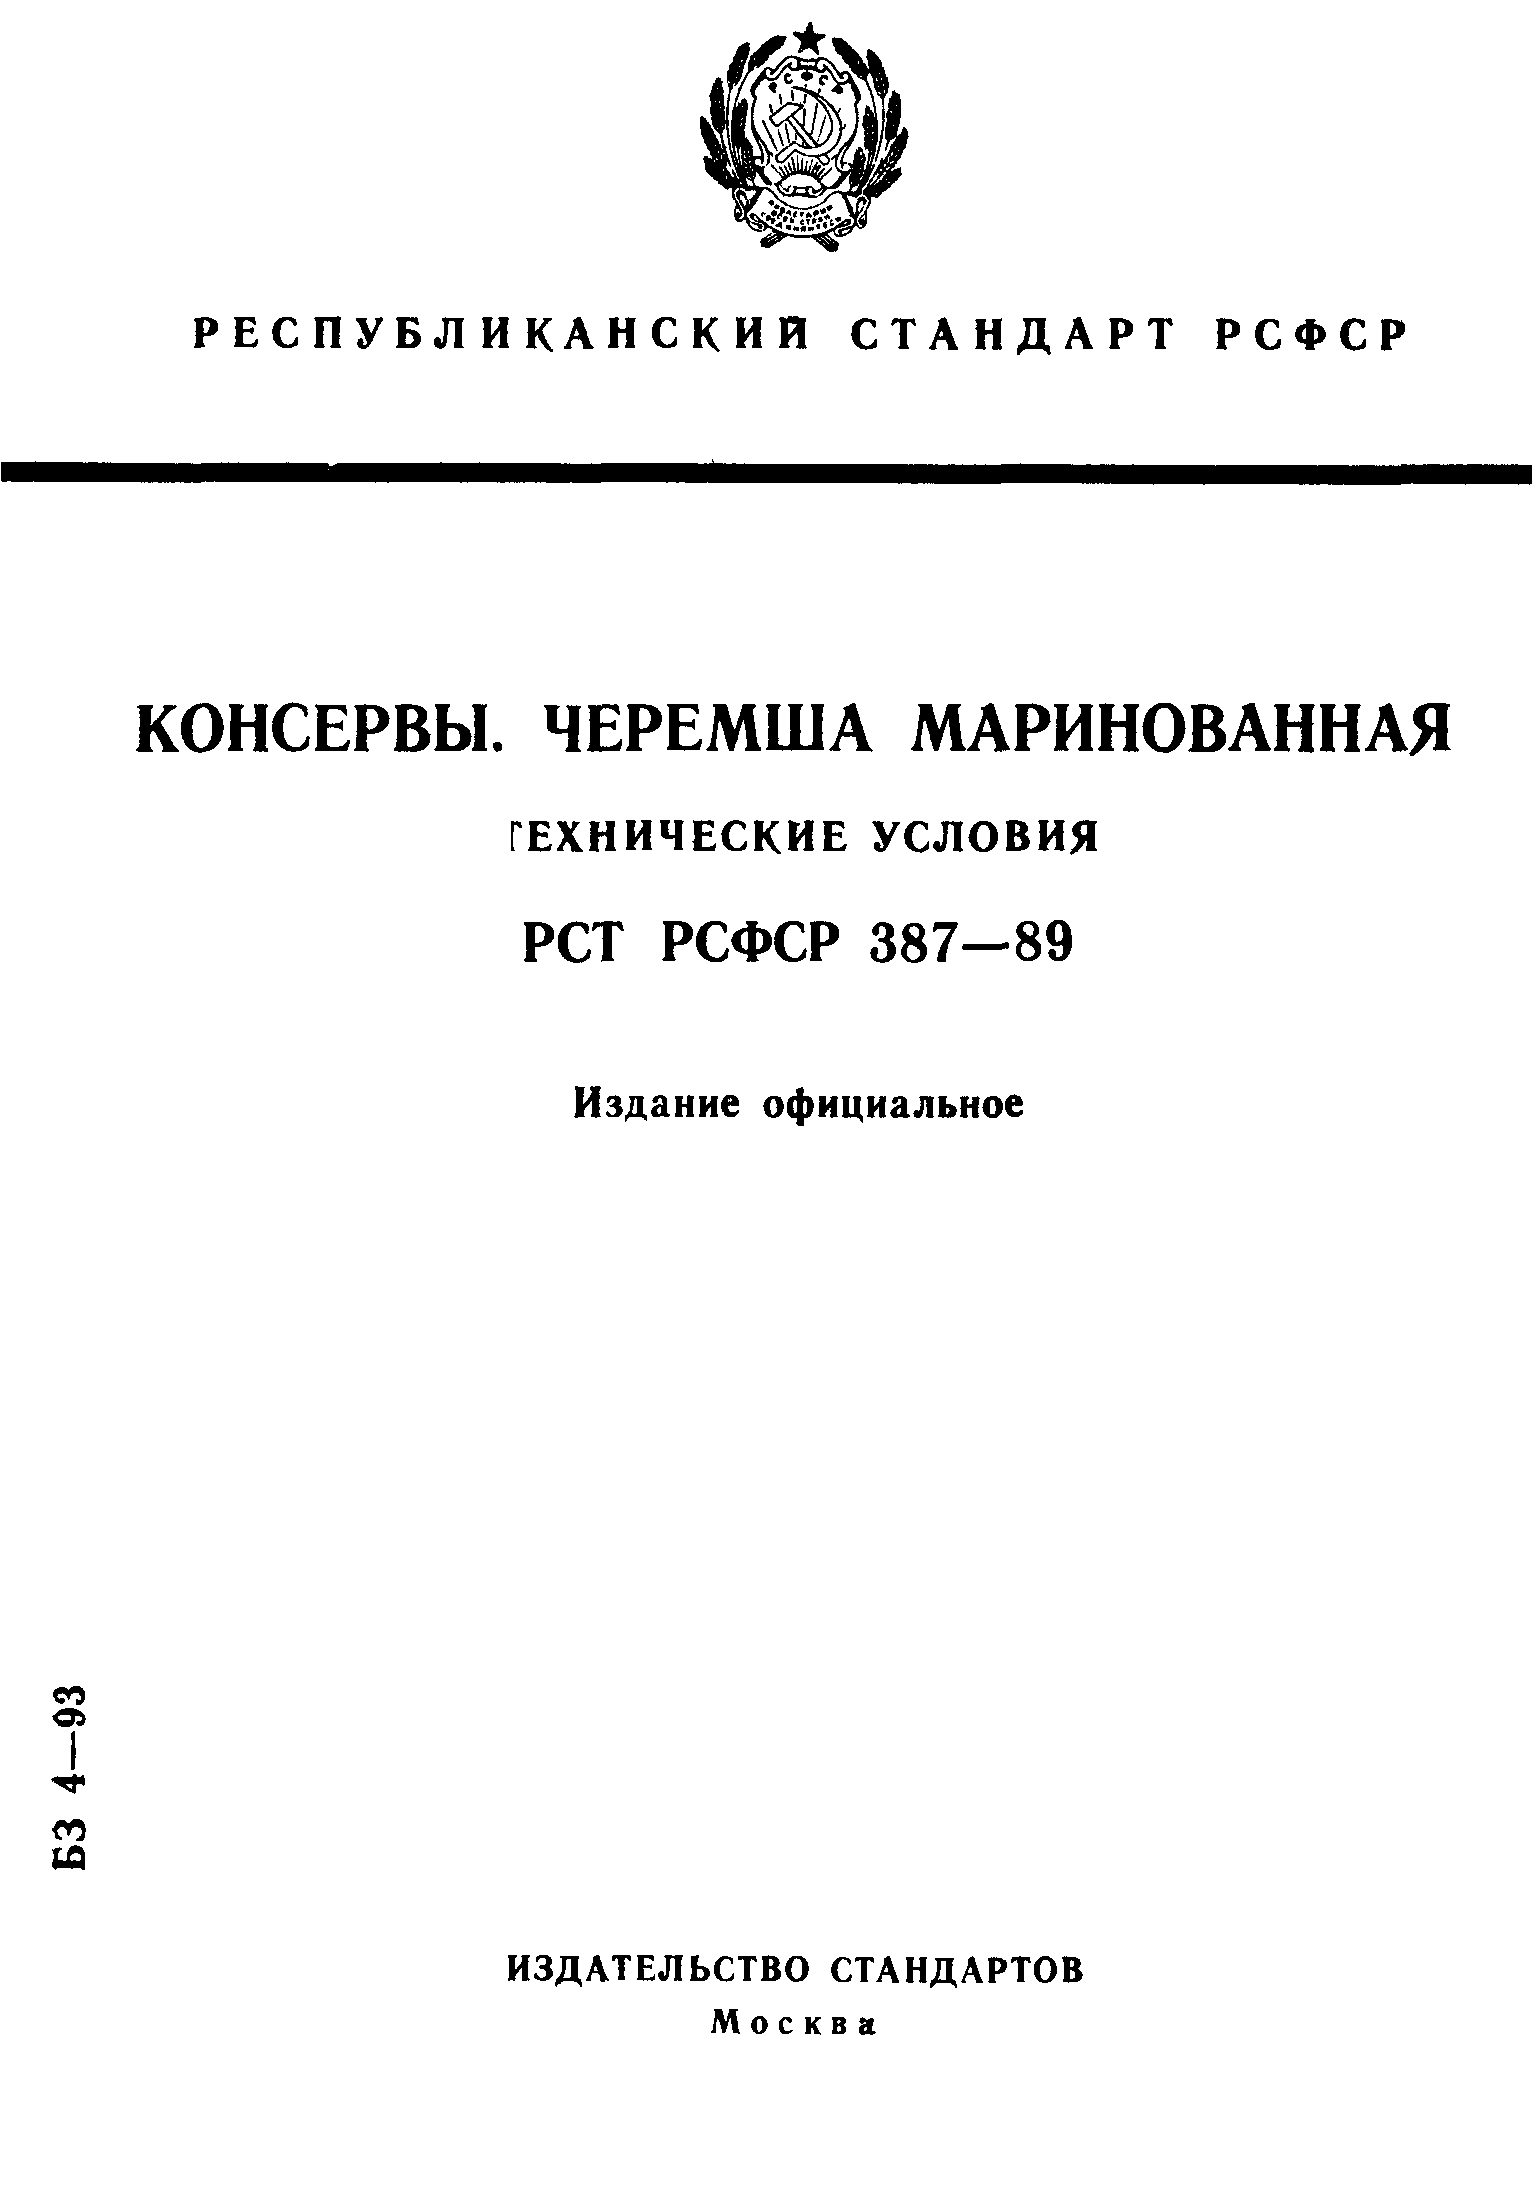 РСТ РСФСР 387-89